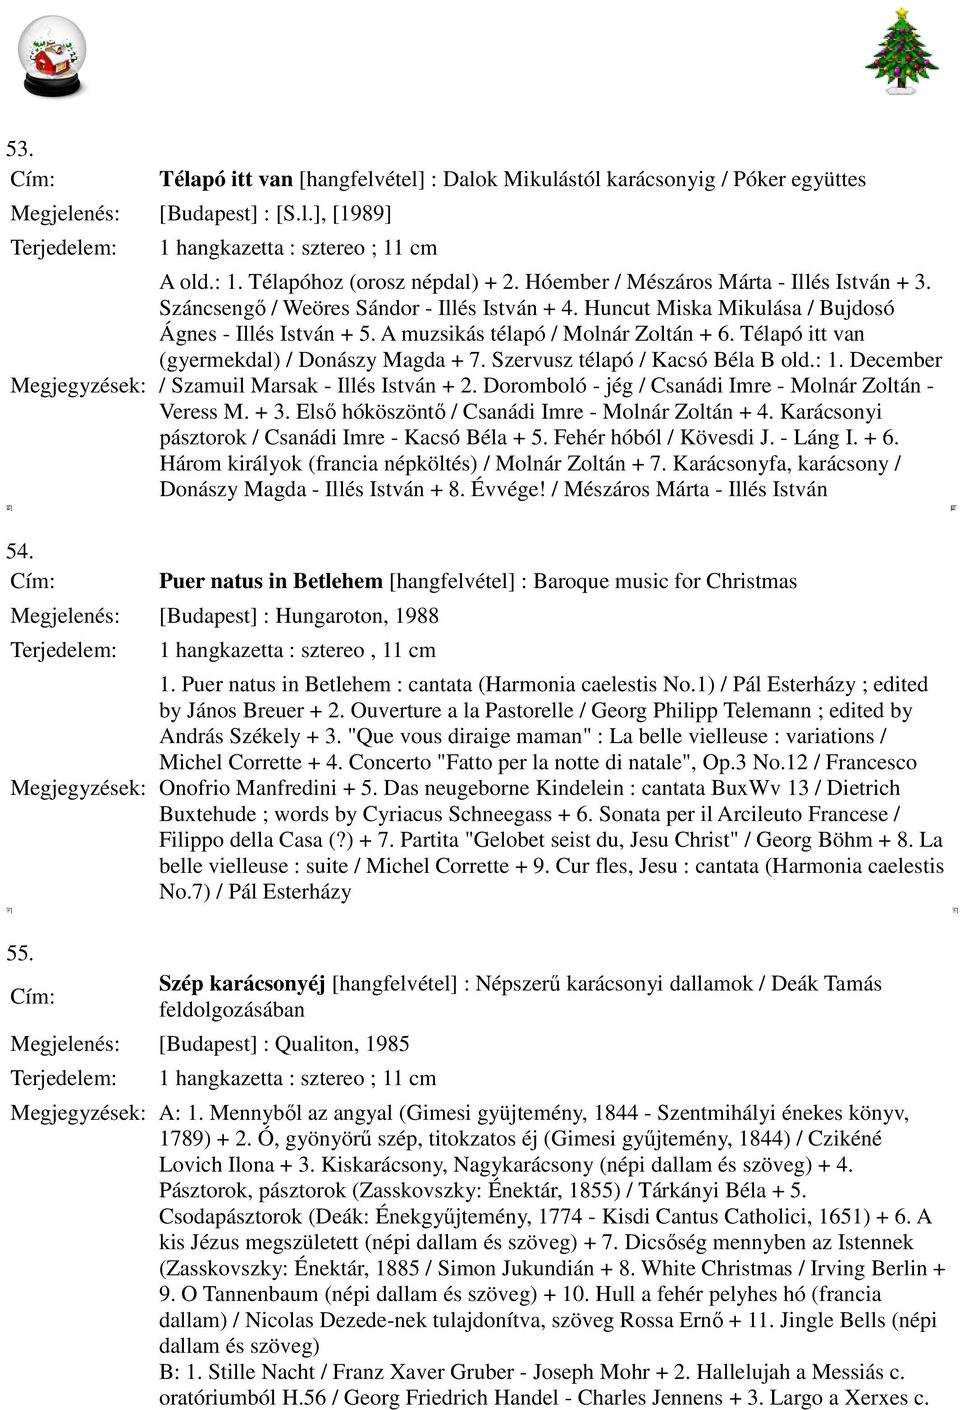 Télapó itt van (gyermekdal) / Donászy Magda + 7. Szervusz télapó / Kacsó Béla B old.: 1. December / Szamuil Marsak - Illés István + 2. Doromboló - jég / Csanádi Imre - Molnár Zoltán - Veress M. + 3.